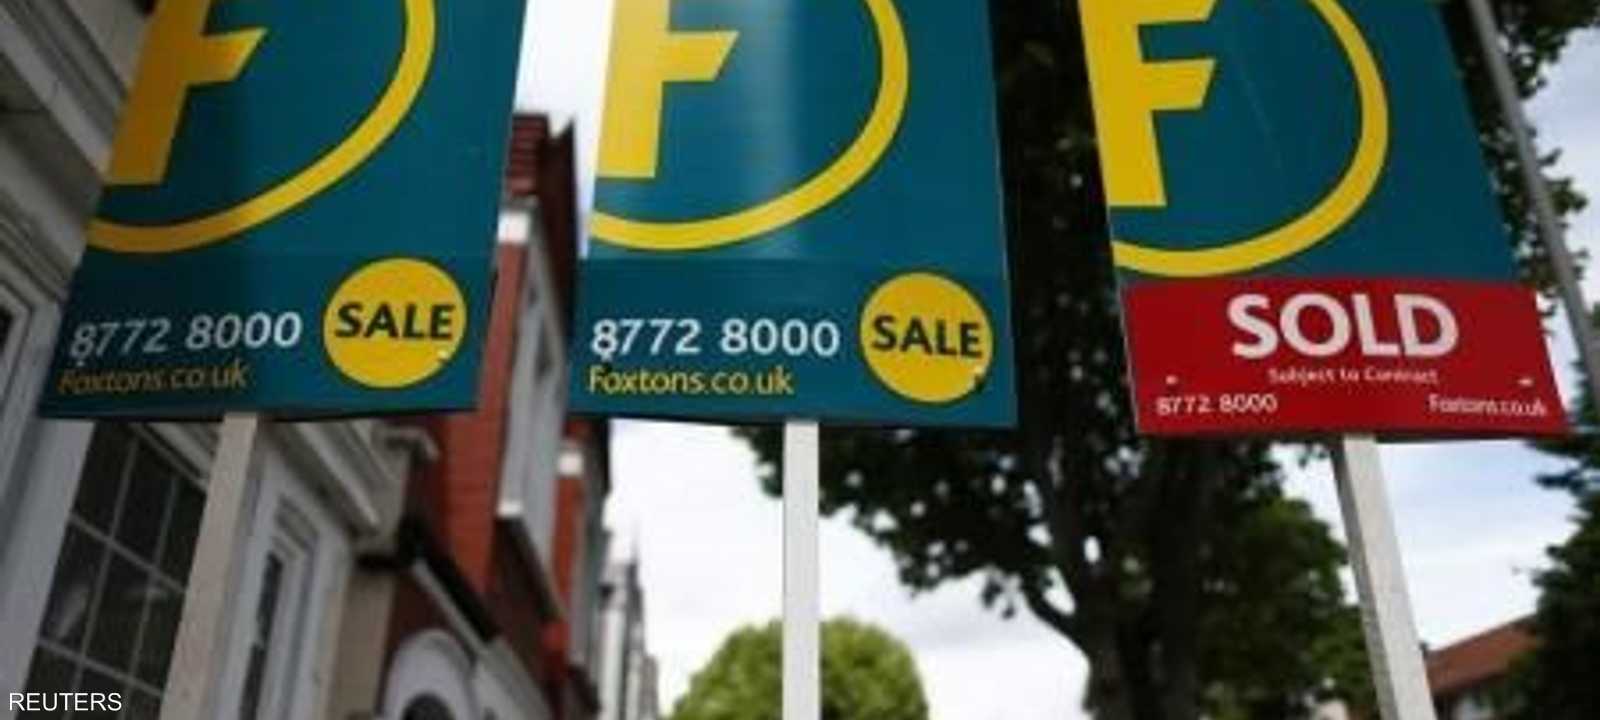 لافتات بأسعار منازل في لندن